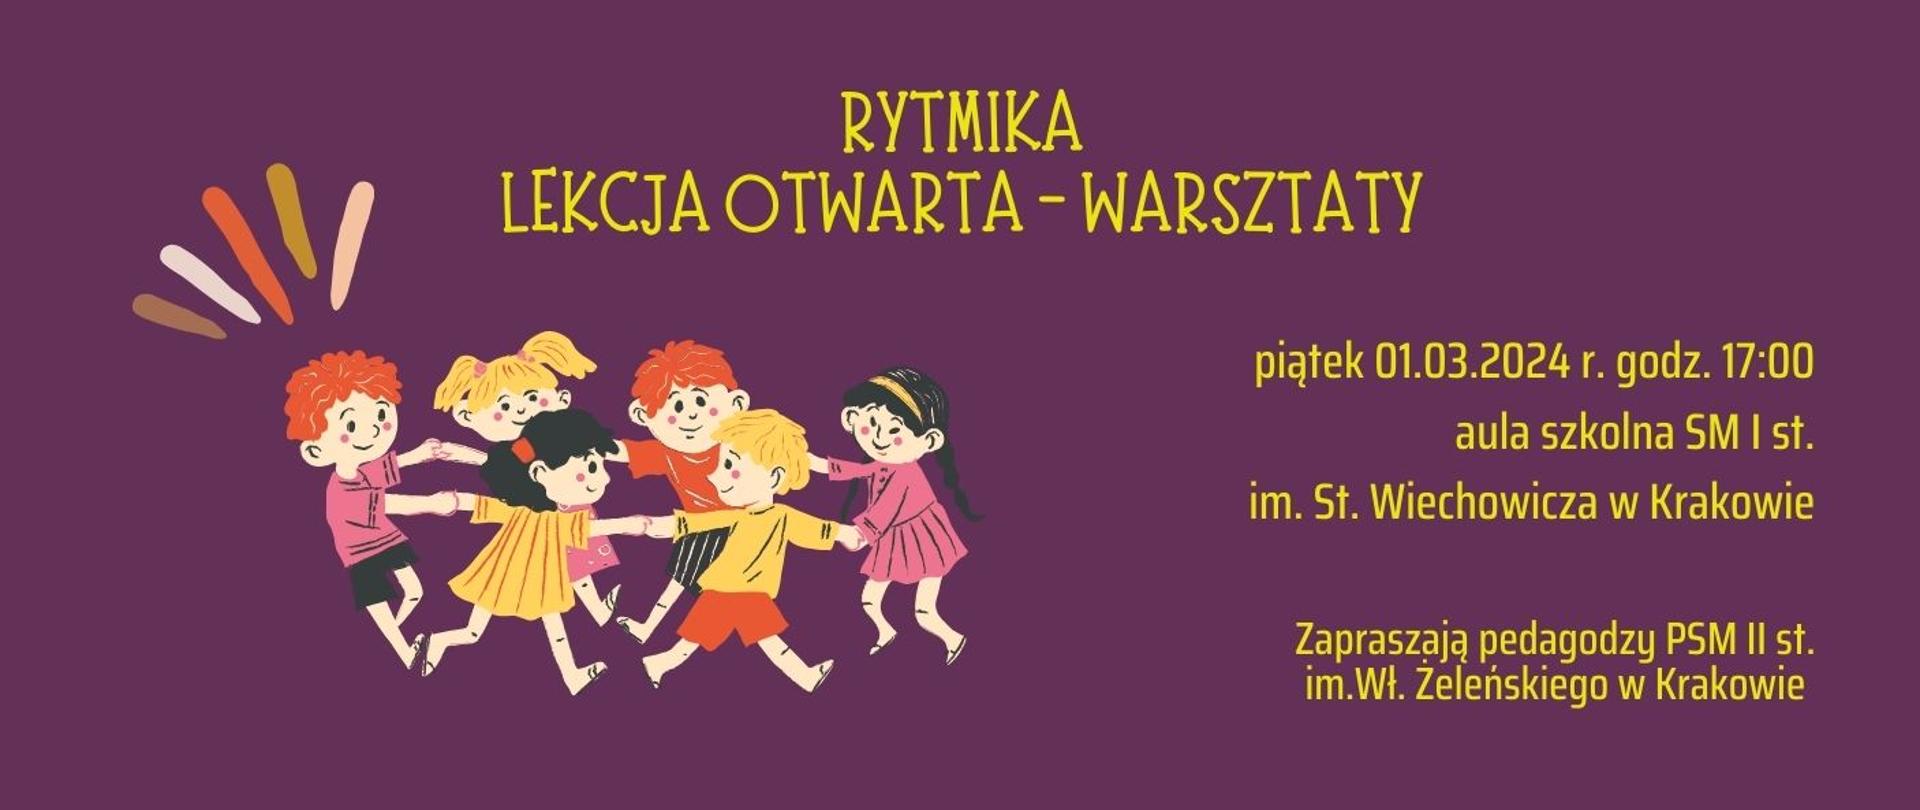 na fioletowym tle po lewej stronie ilustracja przedstawiające tańczące dzieci, na górze żółtymi literami nazwa wydarzenia, po prawej stronie miejsce i czas 